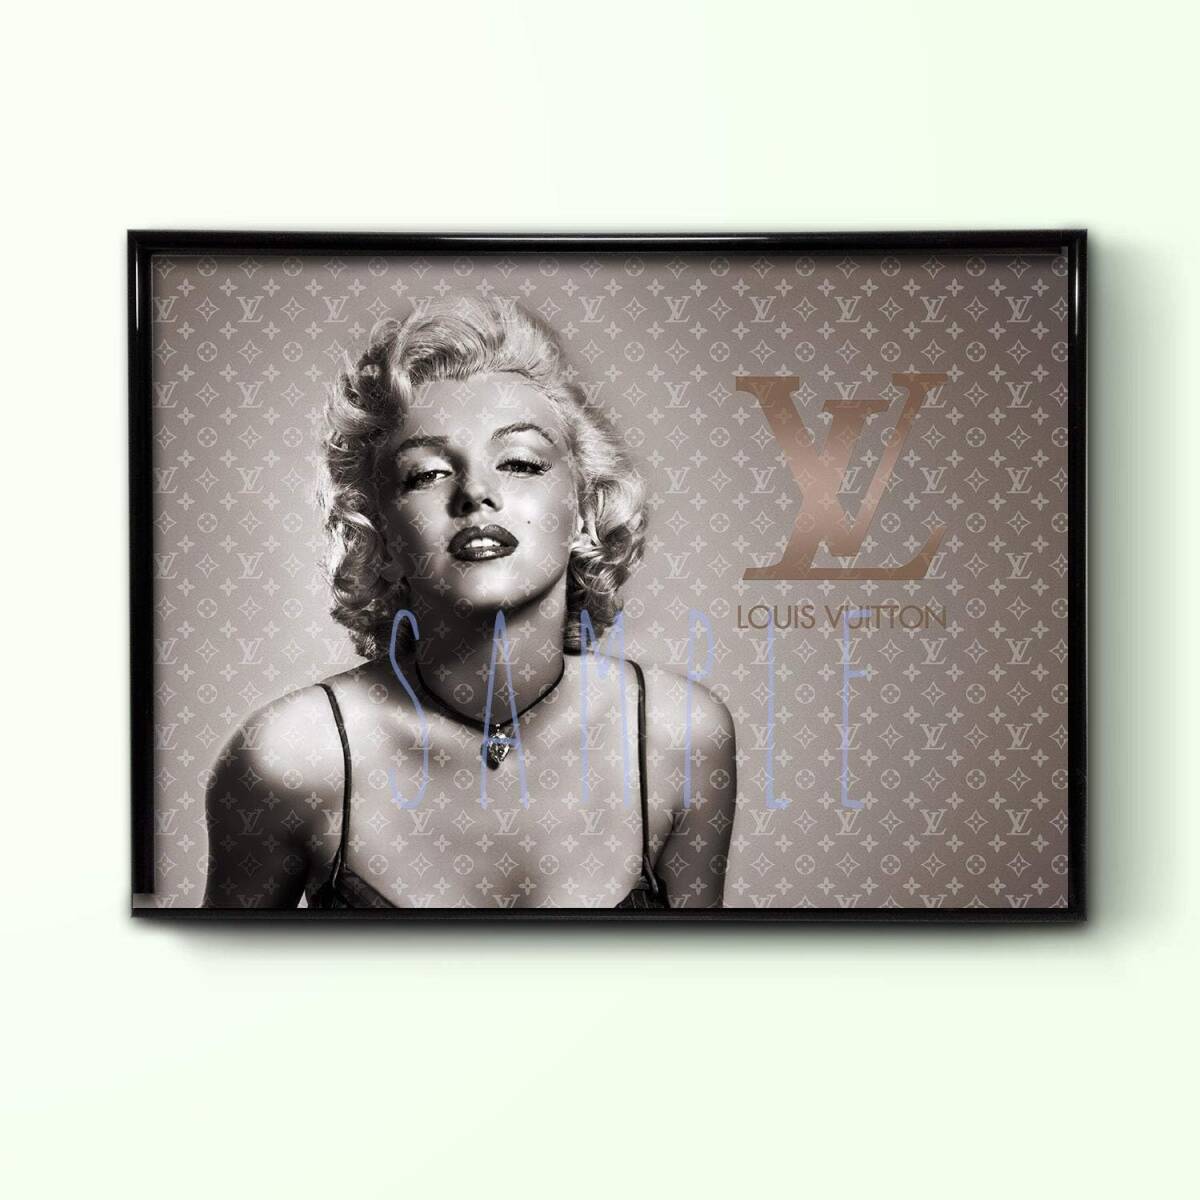 Hommage Art Marilyn Monroe Louis Vuitton LOUIS VUITTON Kunstposter Kunstpanel A4 Größe gerahmt Wandbehang Neu Stylisch, Kunstwerk, Malerei, Andere